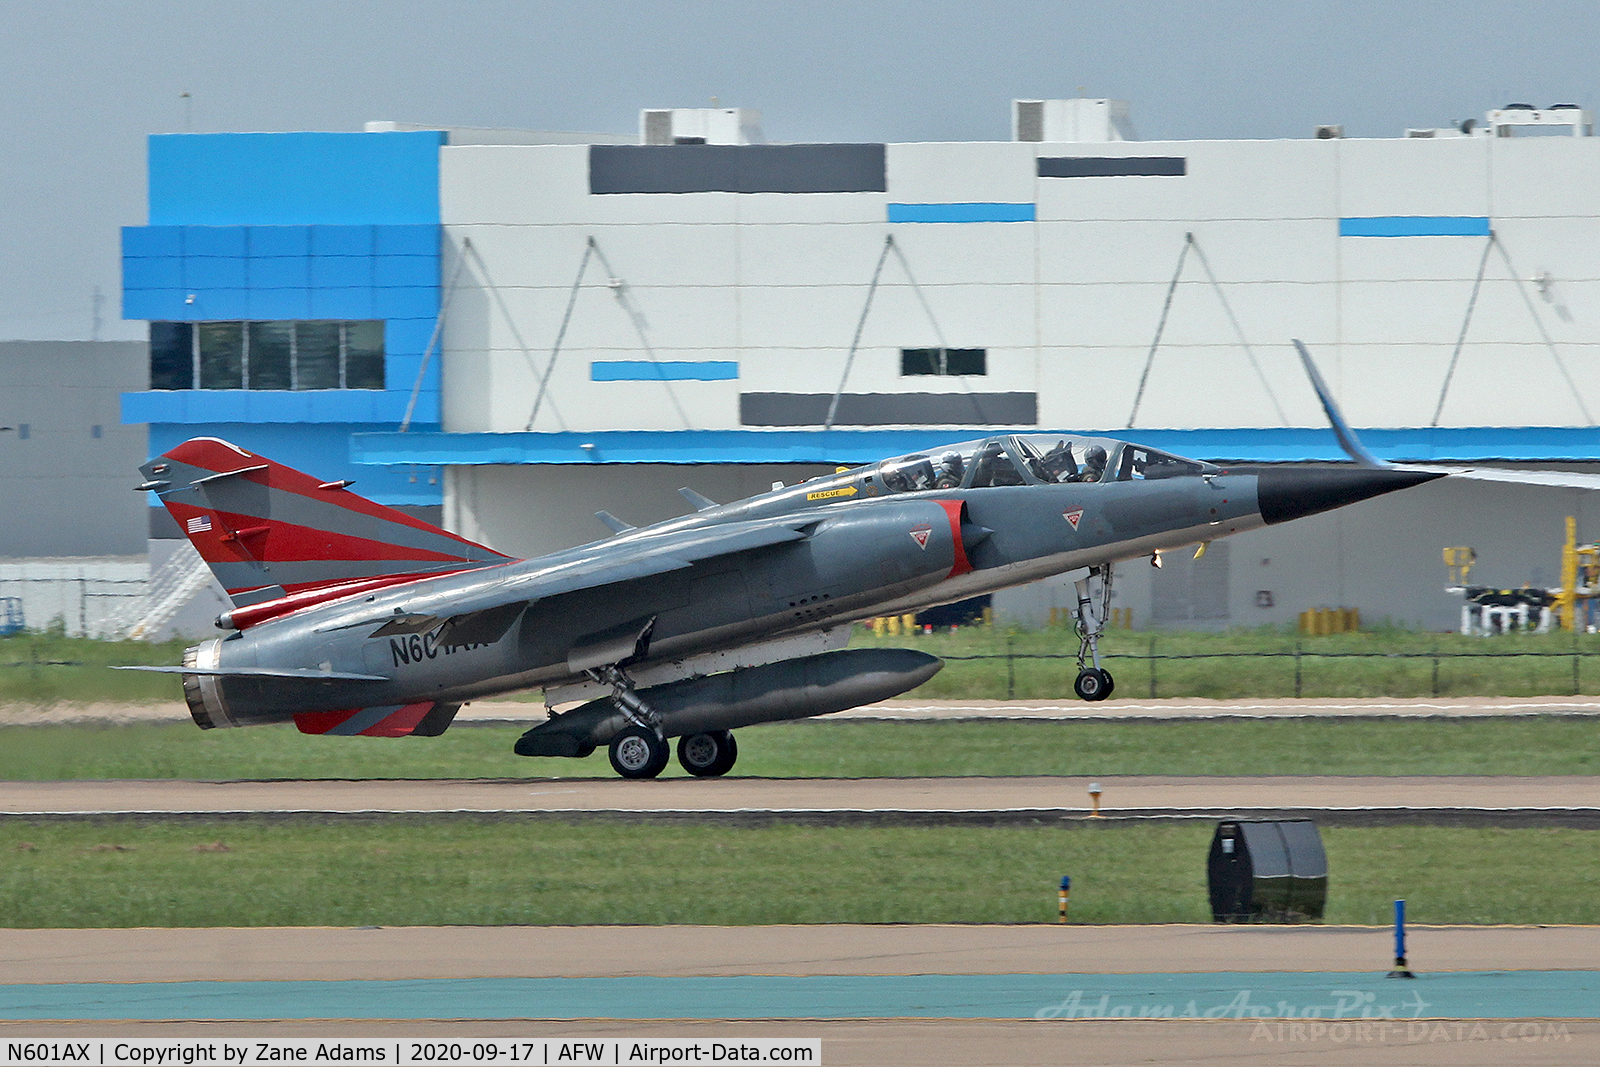 N601AX, Dassault Mirage F.1B C/N 502, ATAC Mirage landing at Alliance Airport - Fort Worth, TX